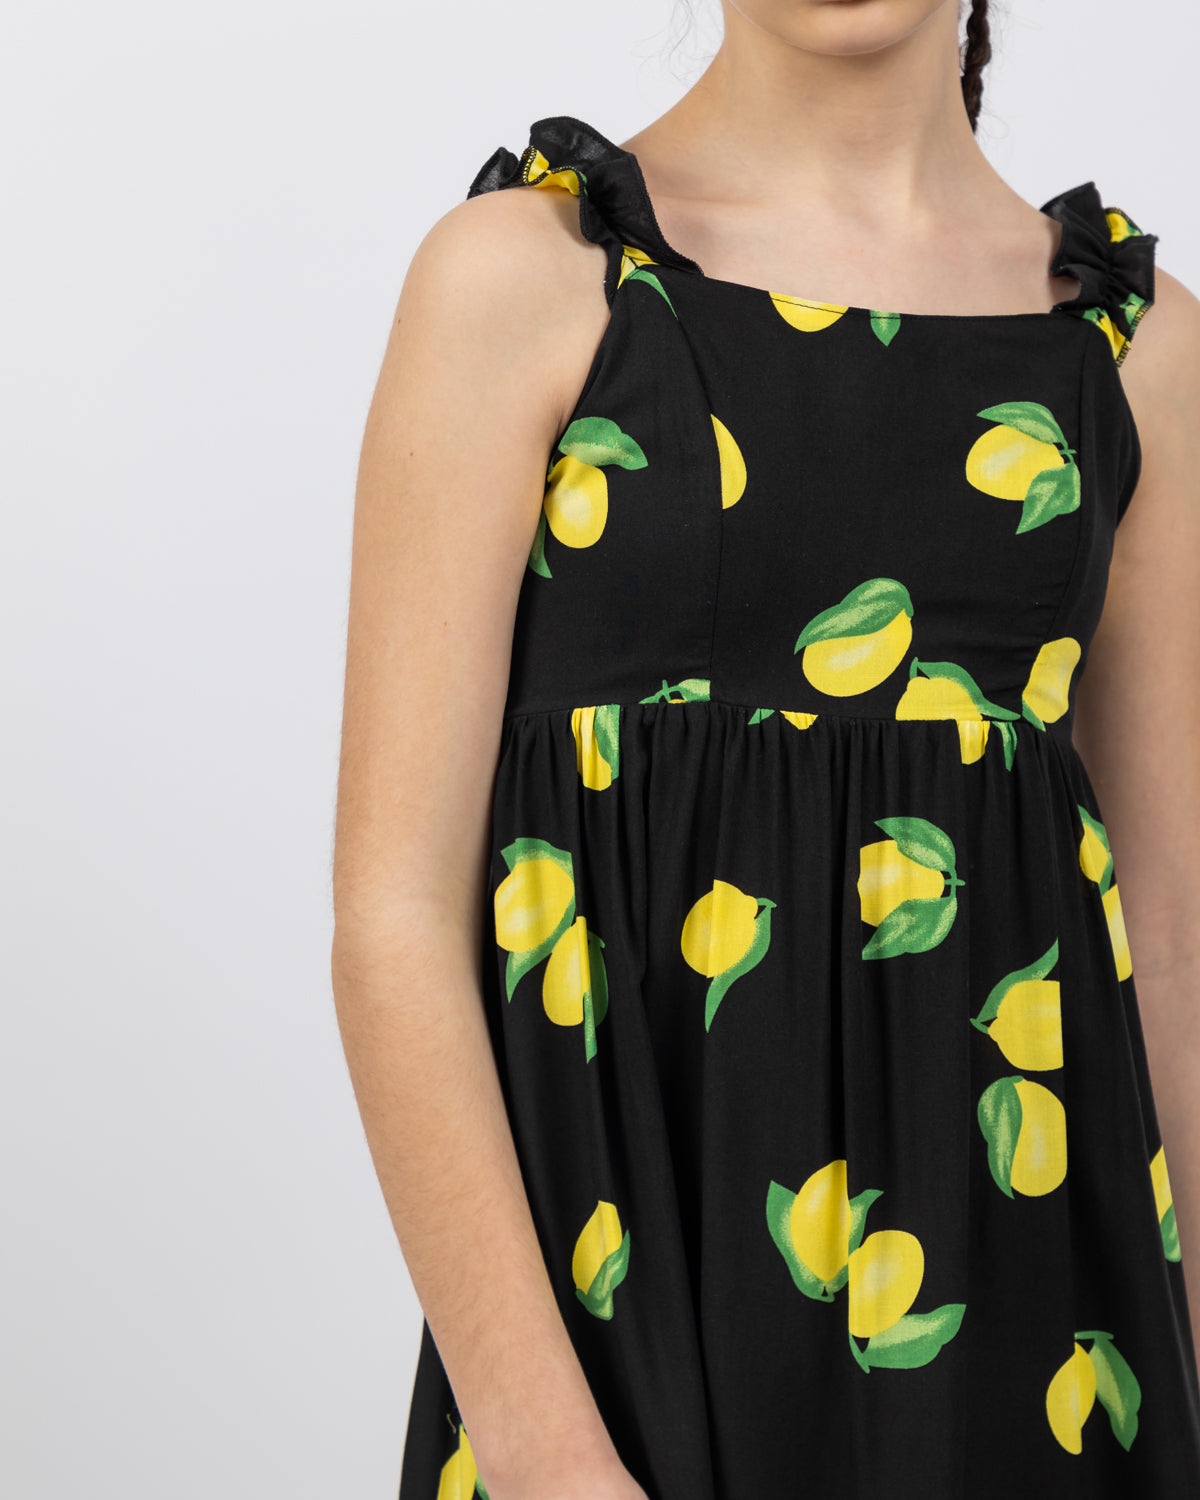 Lemon Print Long Dress For Girls - Black